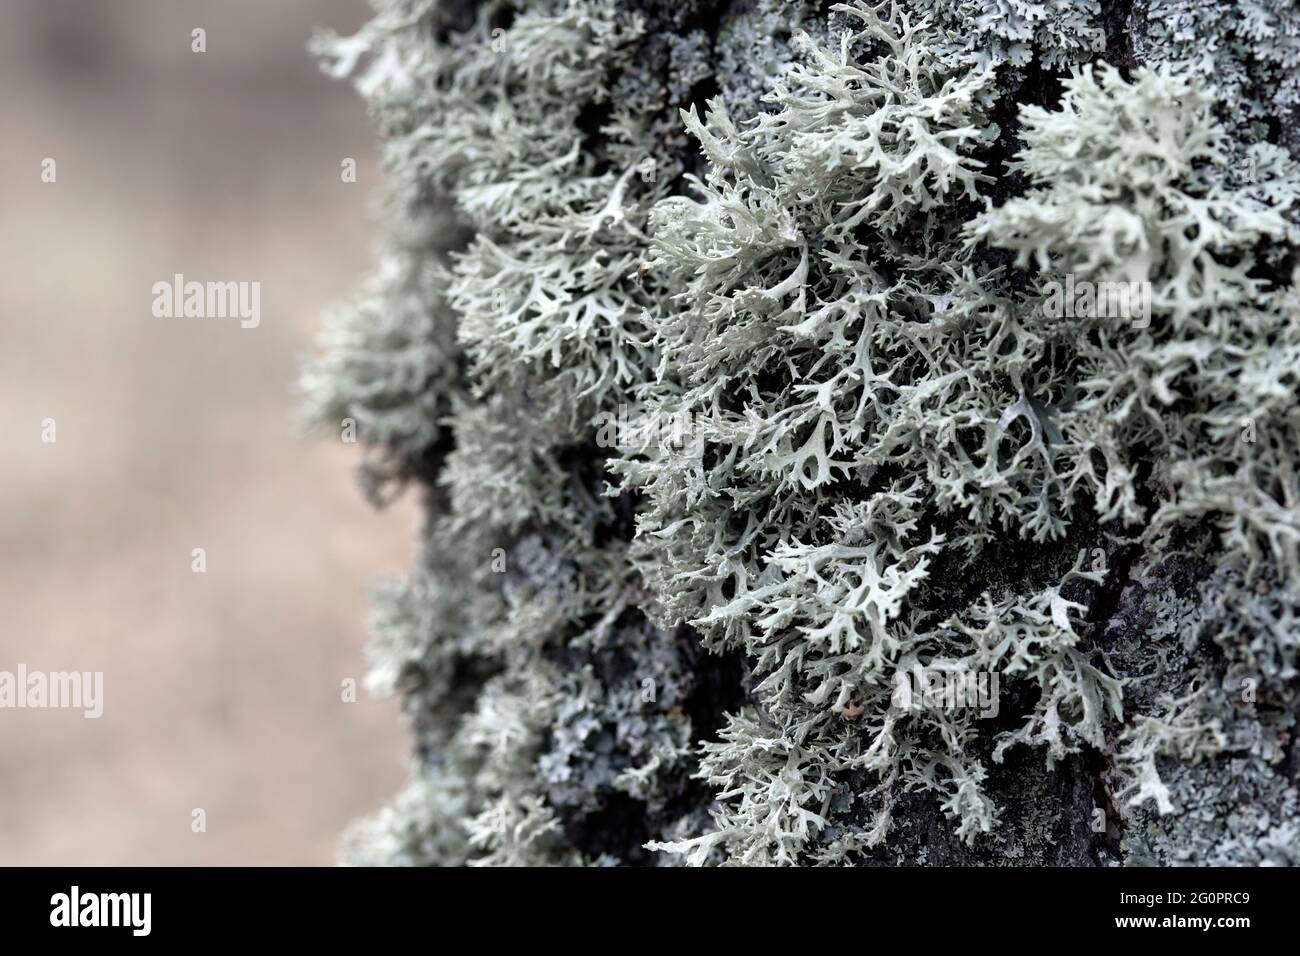 Evernia prunastri gray lichen on a tree trunk Stock Photo